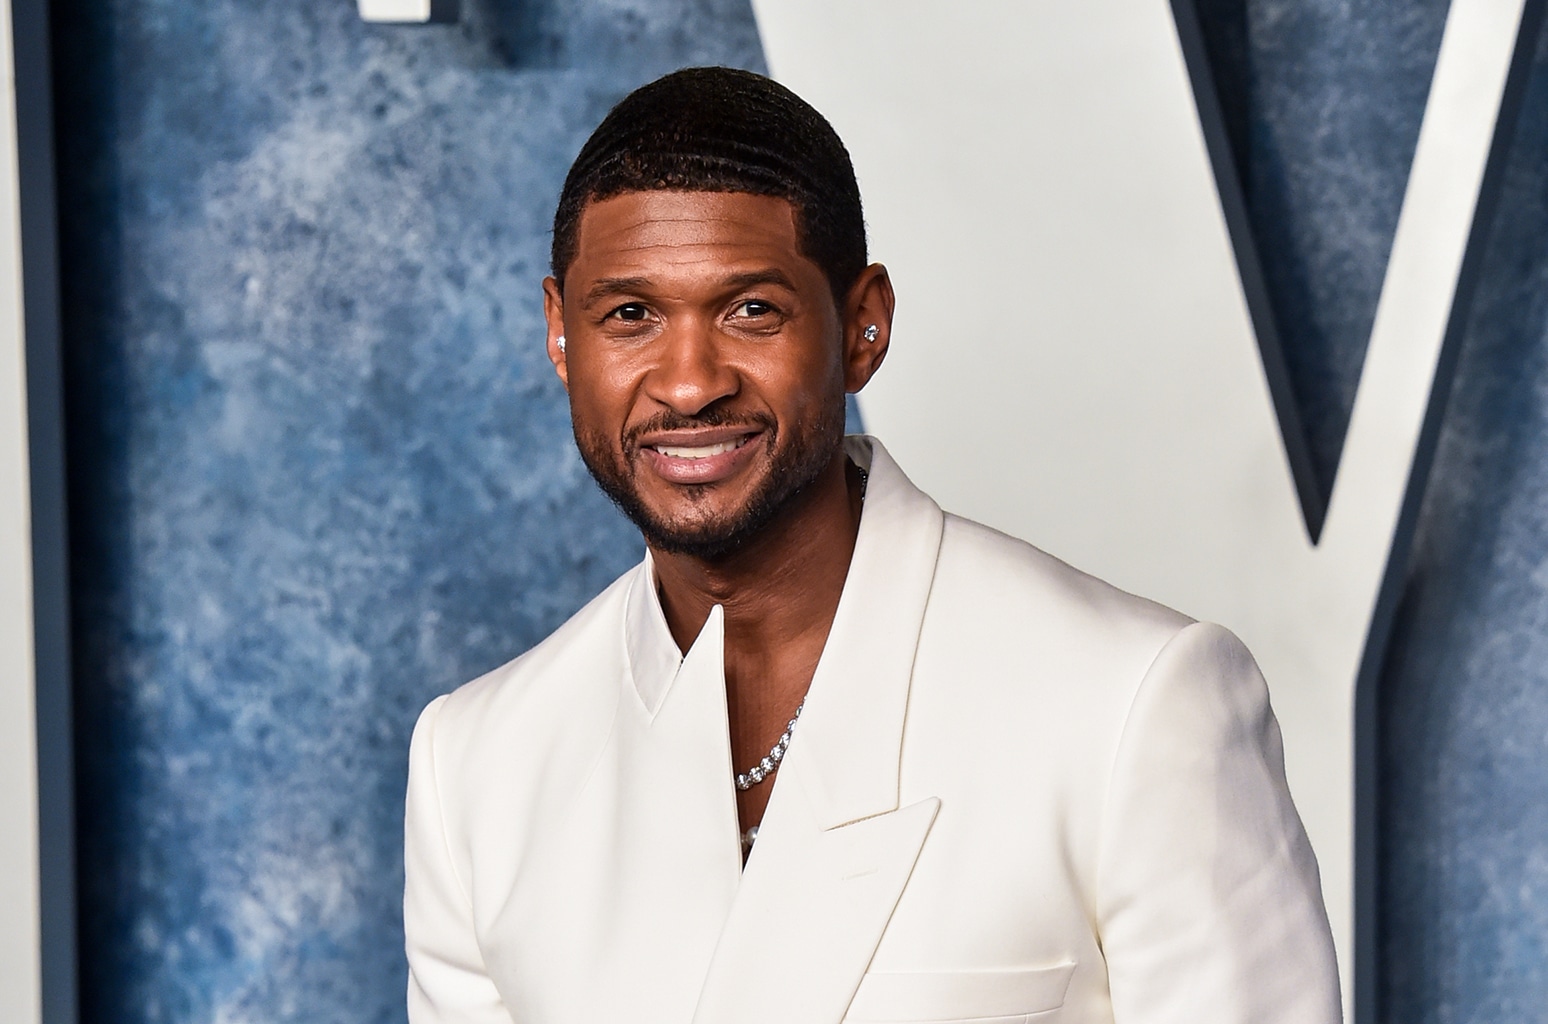 Featured image for “¿Quién es Usher? El artista ganador de 8 Grammy y 9 Hits en el Billboard encabezará el Halftime de la Superbowl”